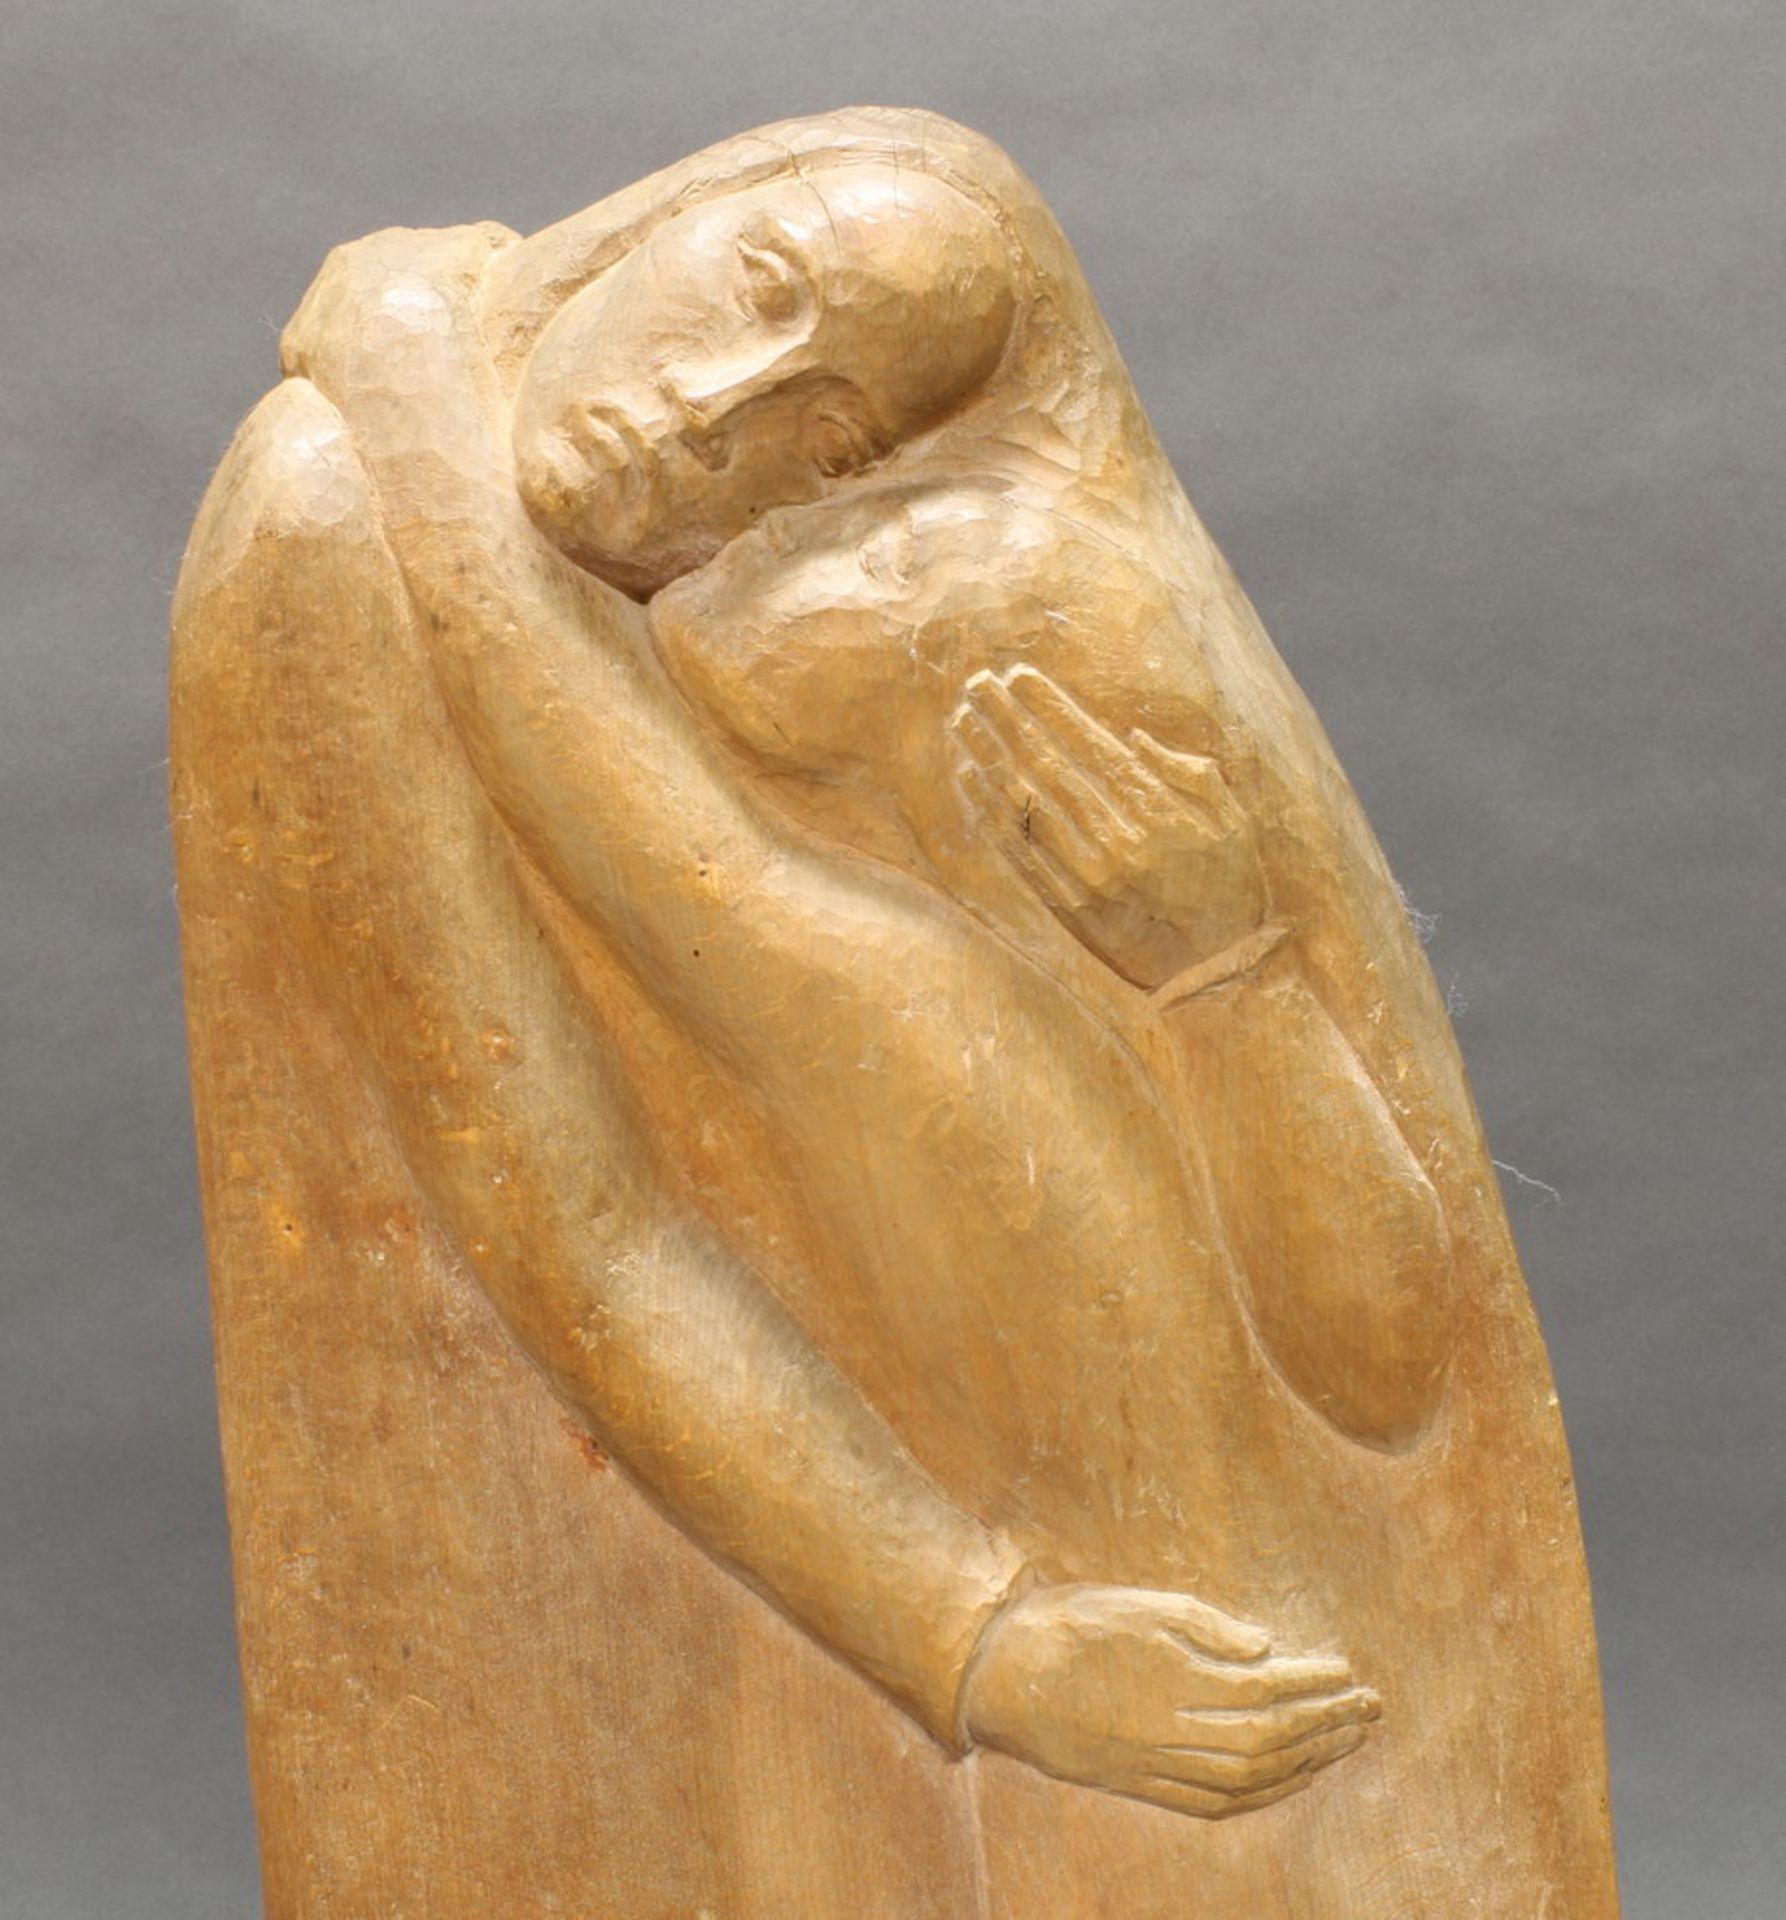 Skulptur, Holz geschnitzt, "Versöhnung", verso bezeichnet SLvB, 1940, Buchenholz, 70 cm hoch. - Bild 2 aus 3